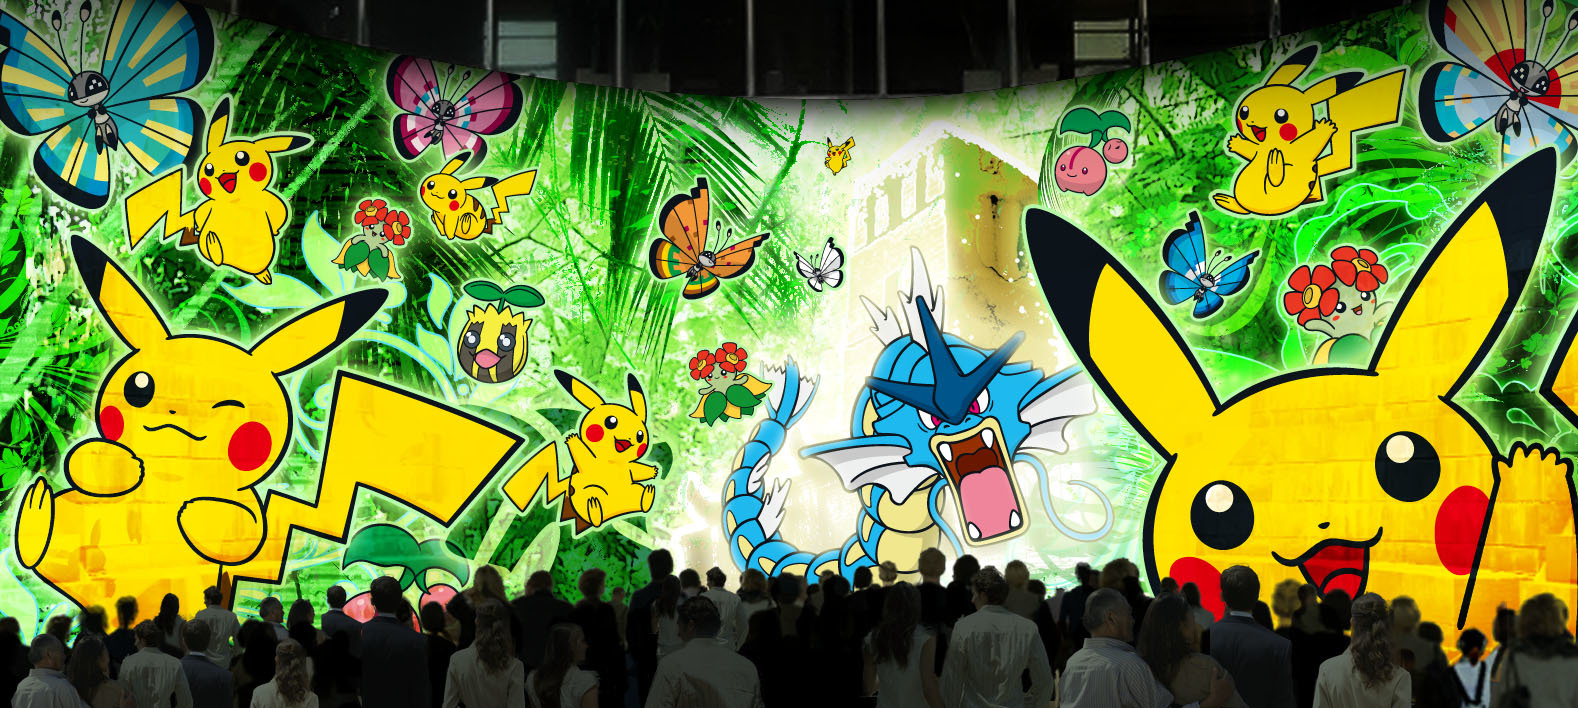 ドックヤード・プロジェクションマッピング『「ピカチュウと踊る探検家」～ジャングル遺跡の謎～』イメージ ©2015 Pokémon. ©1995-2015 Nintendo/Creatures Inc. /GAME FREAK inc. ポケットモンスター・ポケモン・Pokémonは任天堂・クリーチャーズ・ゲームフリークの登録商標です。